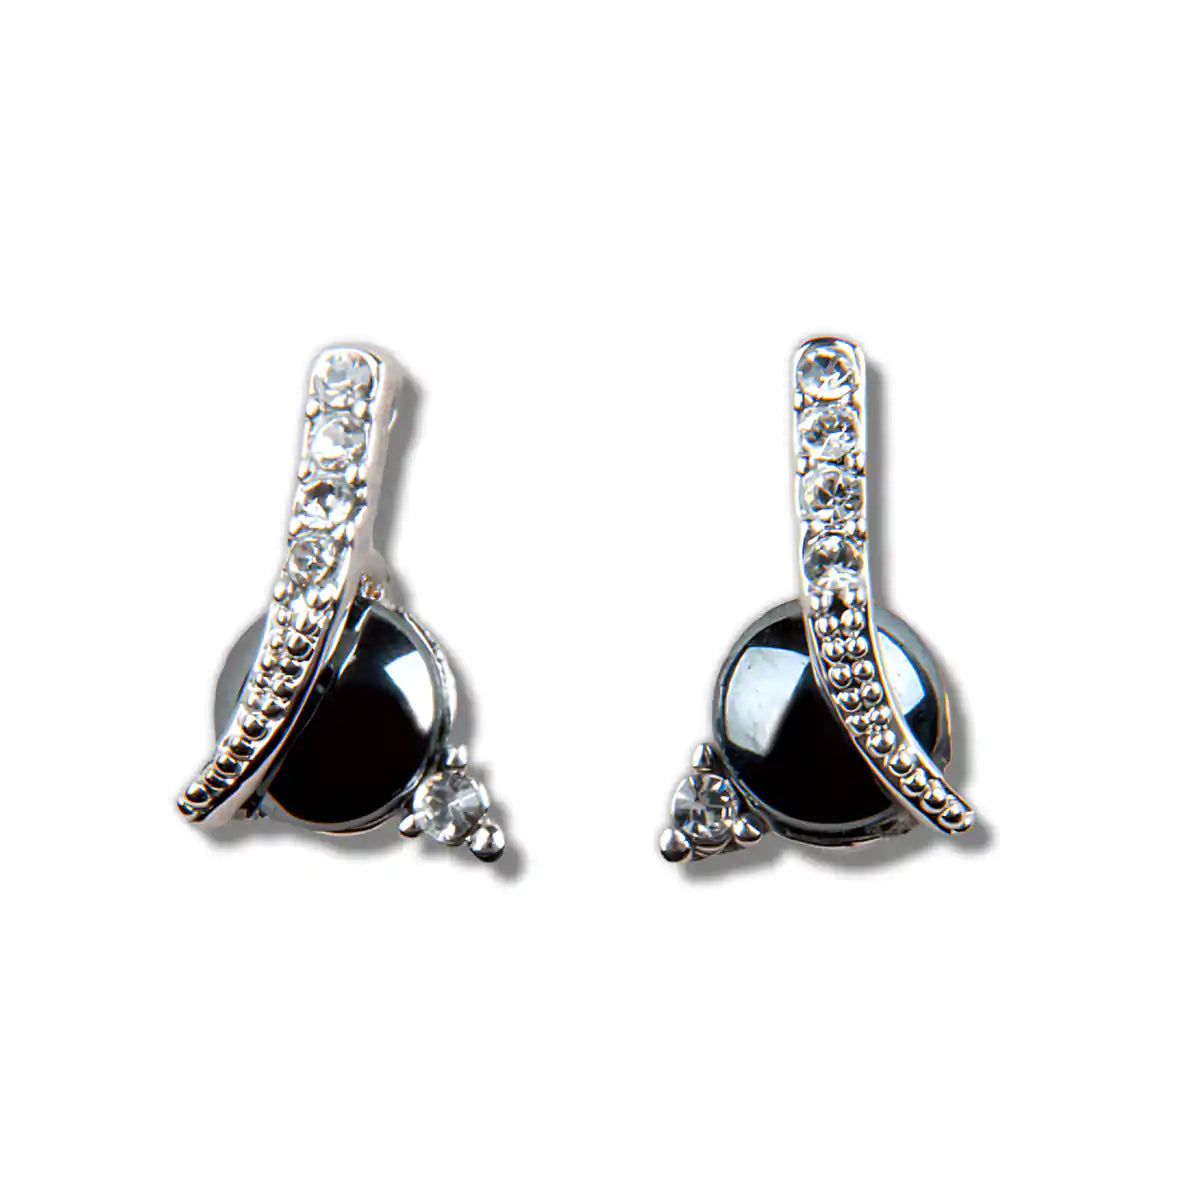 Hematite bliss earrings